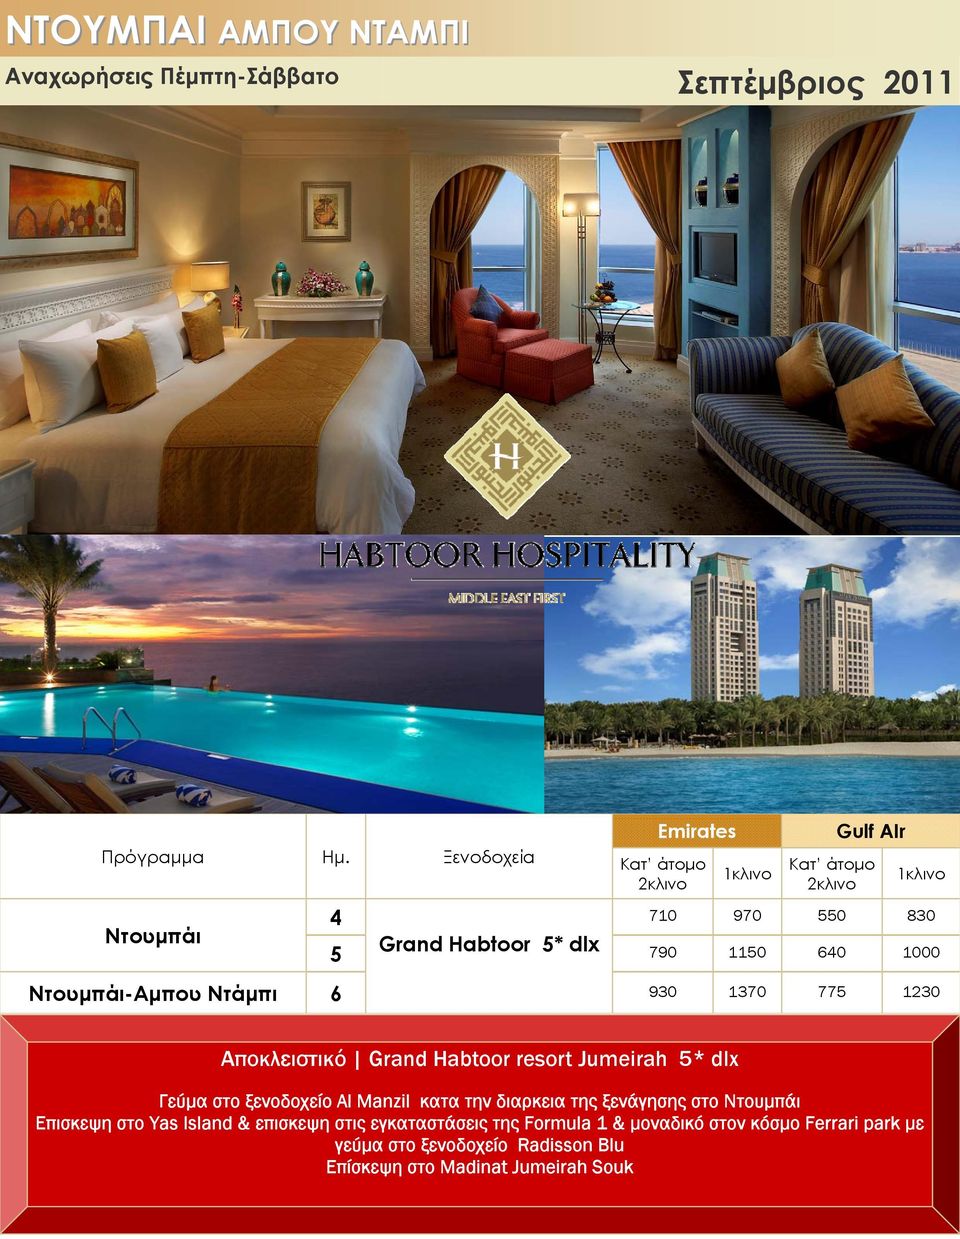 1230 Αποκλειστικό Grand Habtoor resort Jumeirah 5* dlx Γεύμα στο ξενοδοχείο Al Manzil κατα την